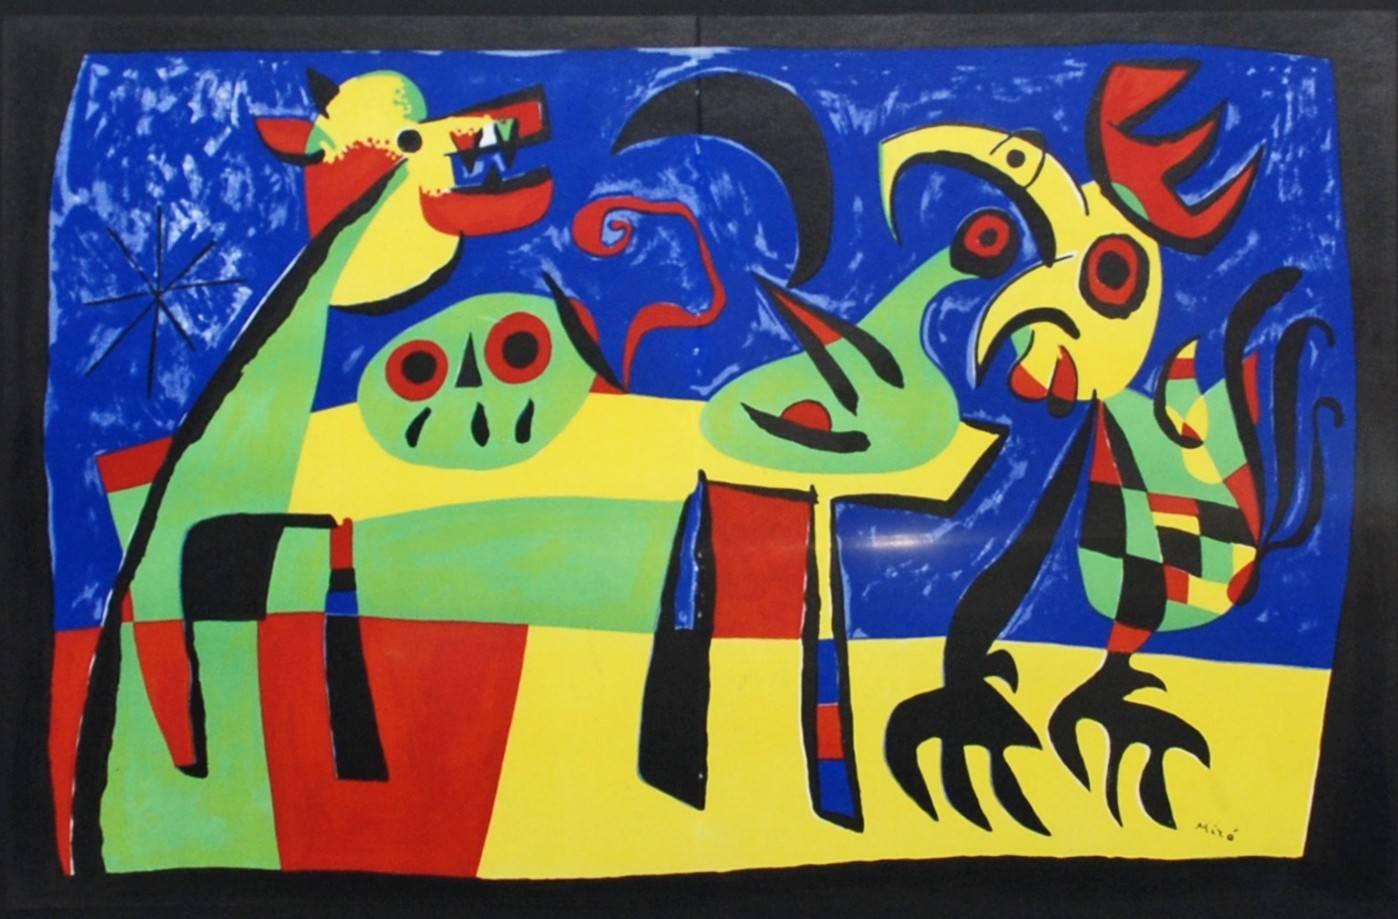 Barking Dog - Print by Joan Miró